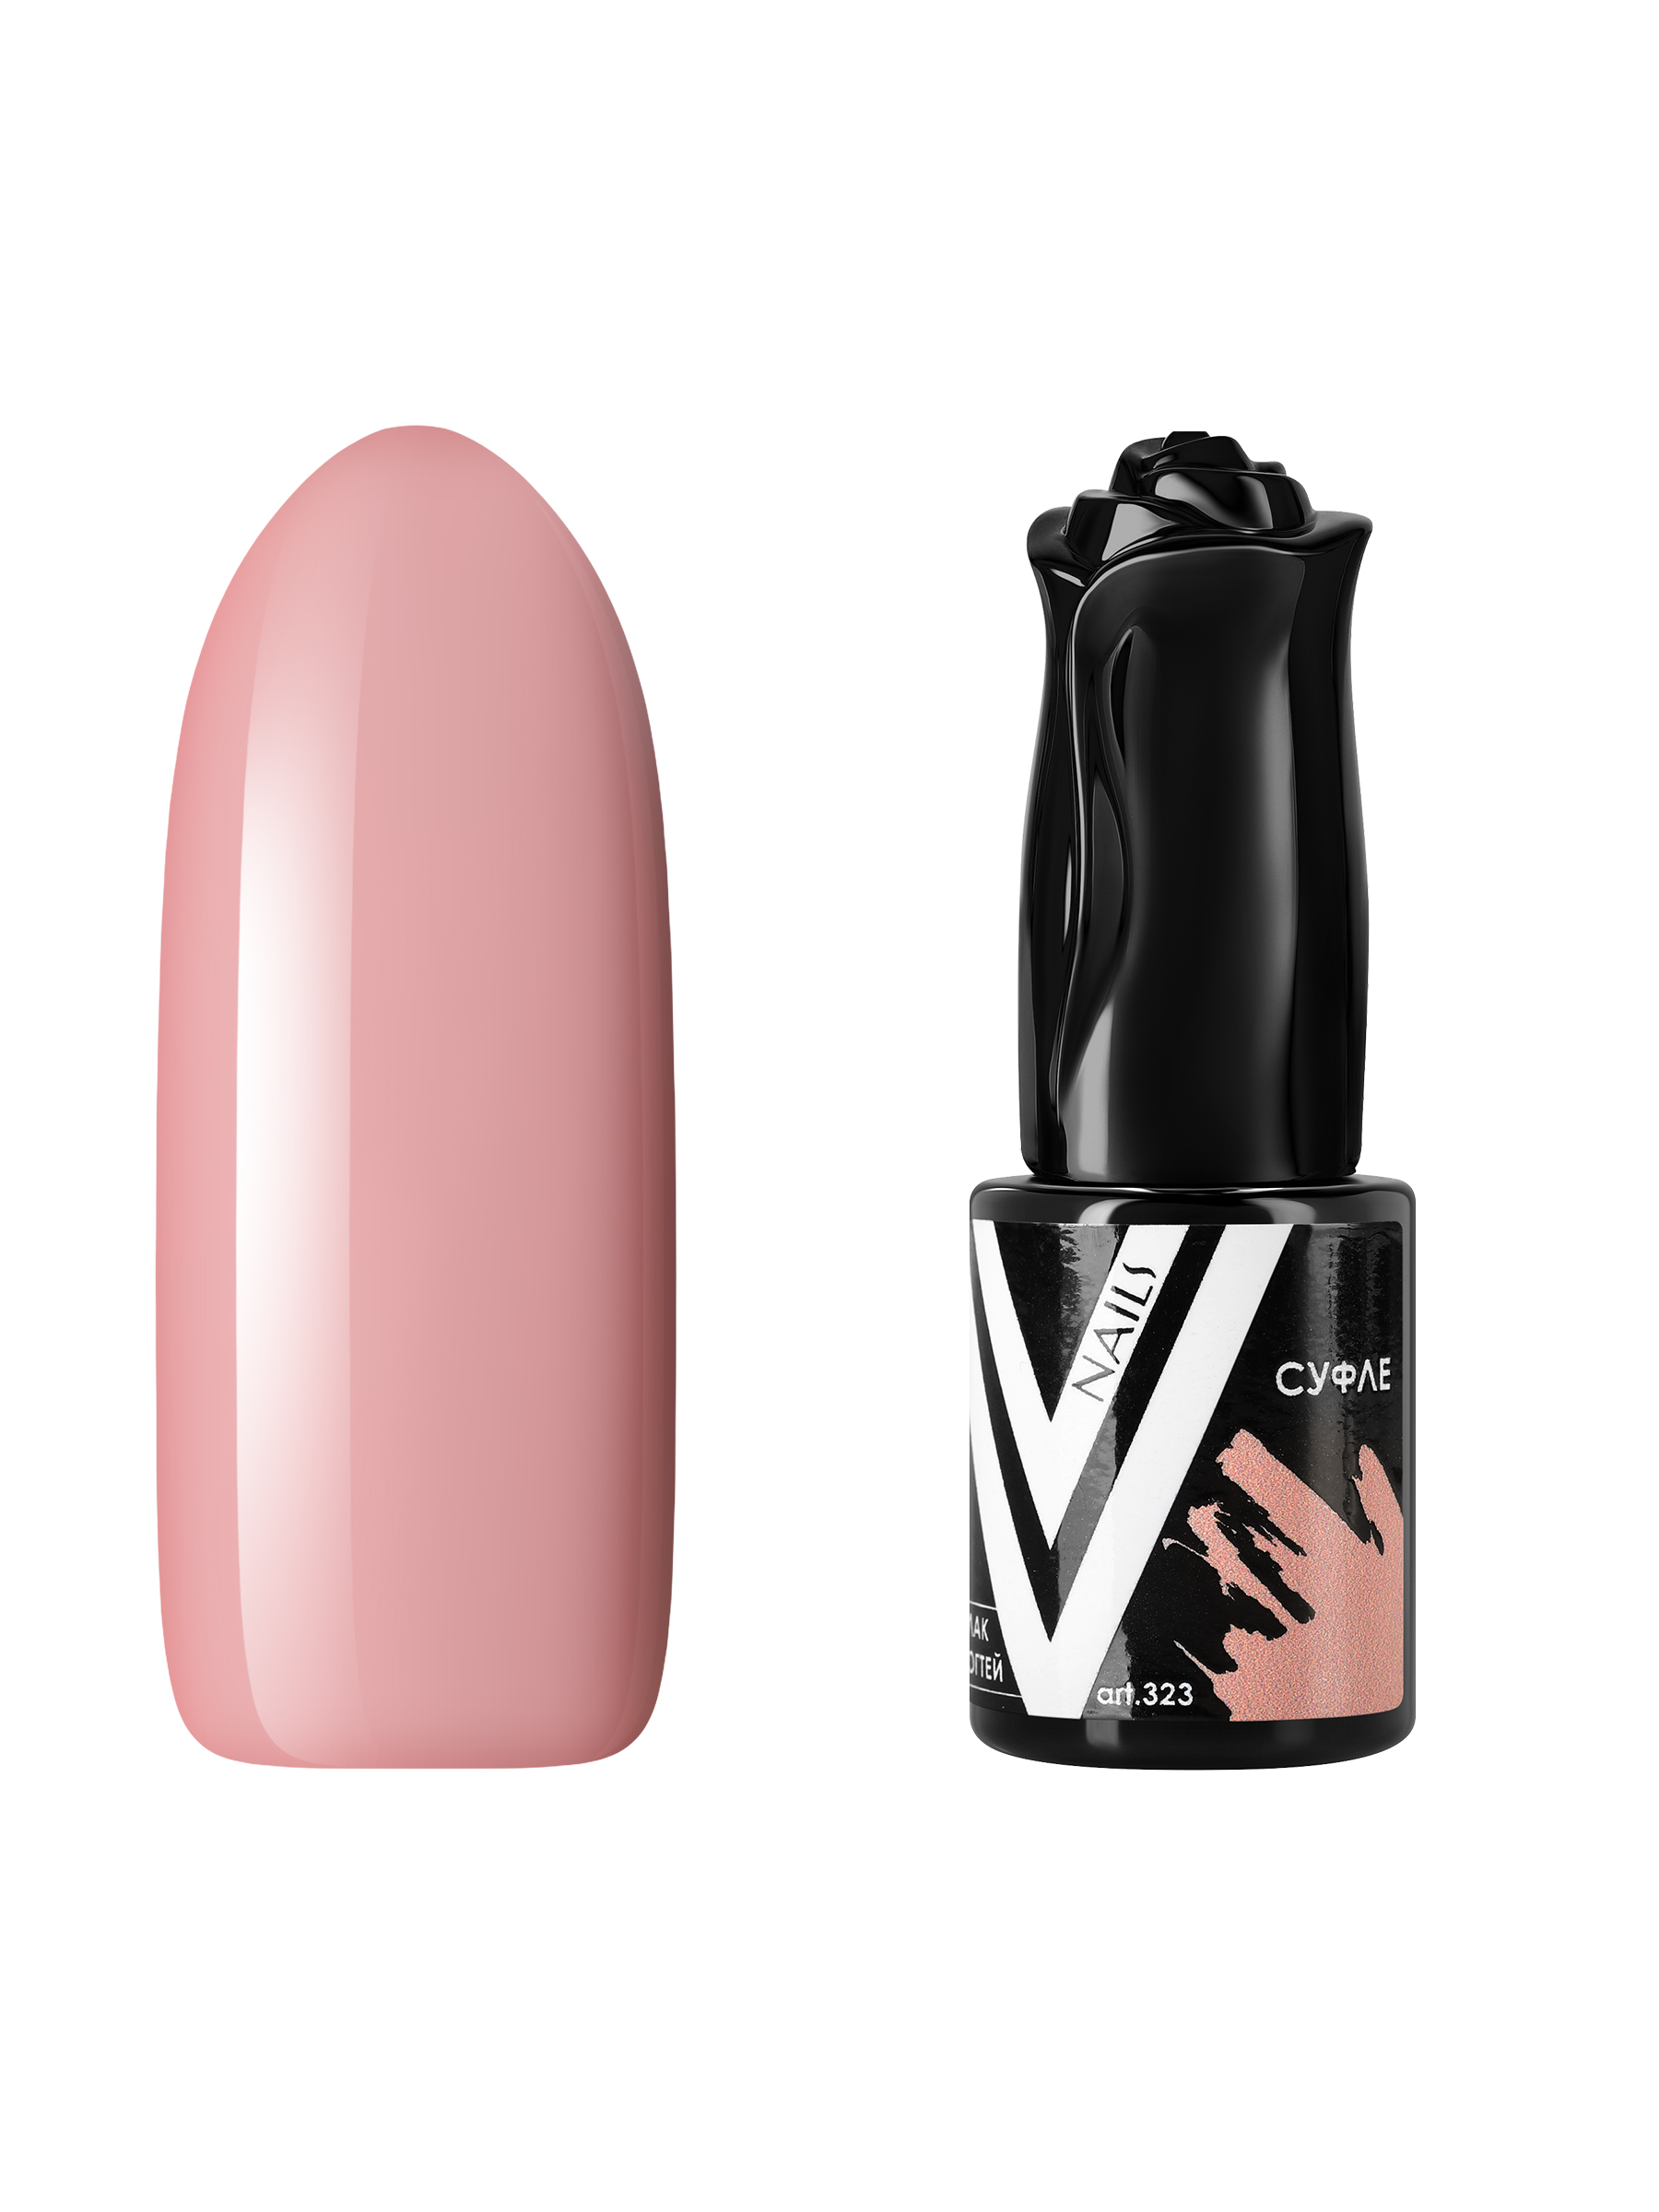 Гель-лак для ногтей Vogue Nails плотный, самовыравнивающийся, светлый, бежевый, 10 мл гель лак pashe nude collection 14 камуфлирующий бежевый 9 мл